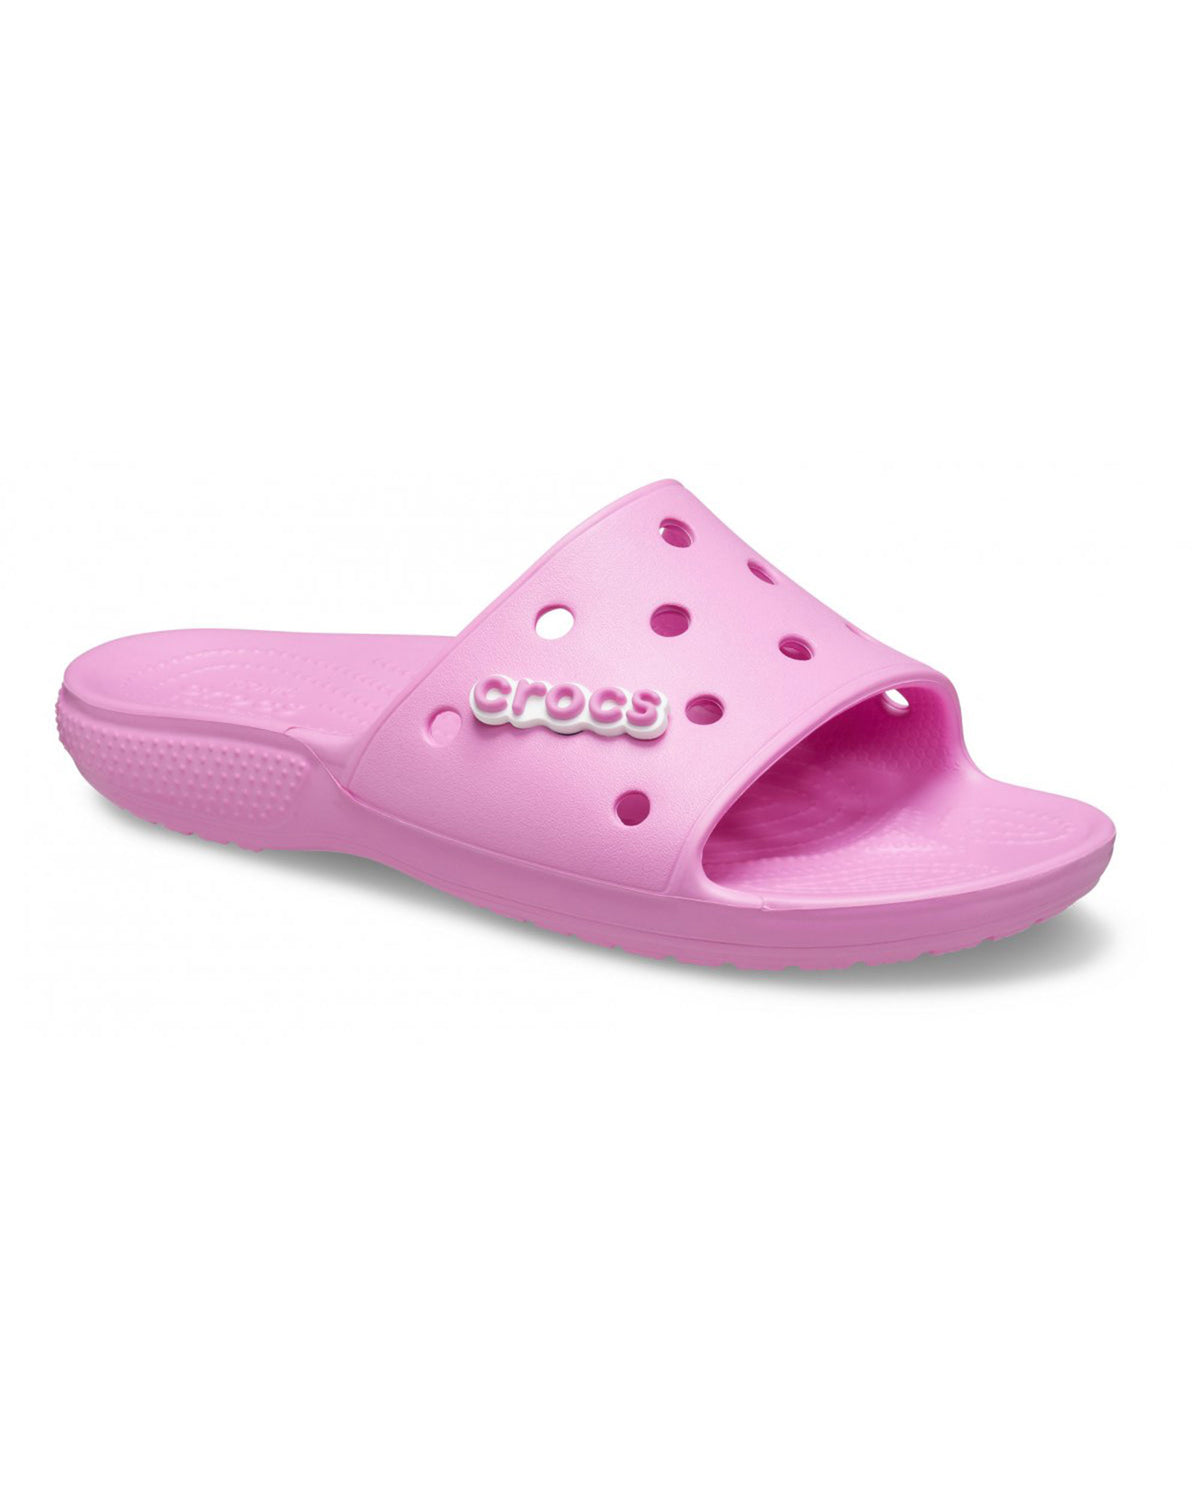 Classic Crocs Slide Taffy Pink Women